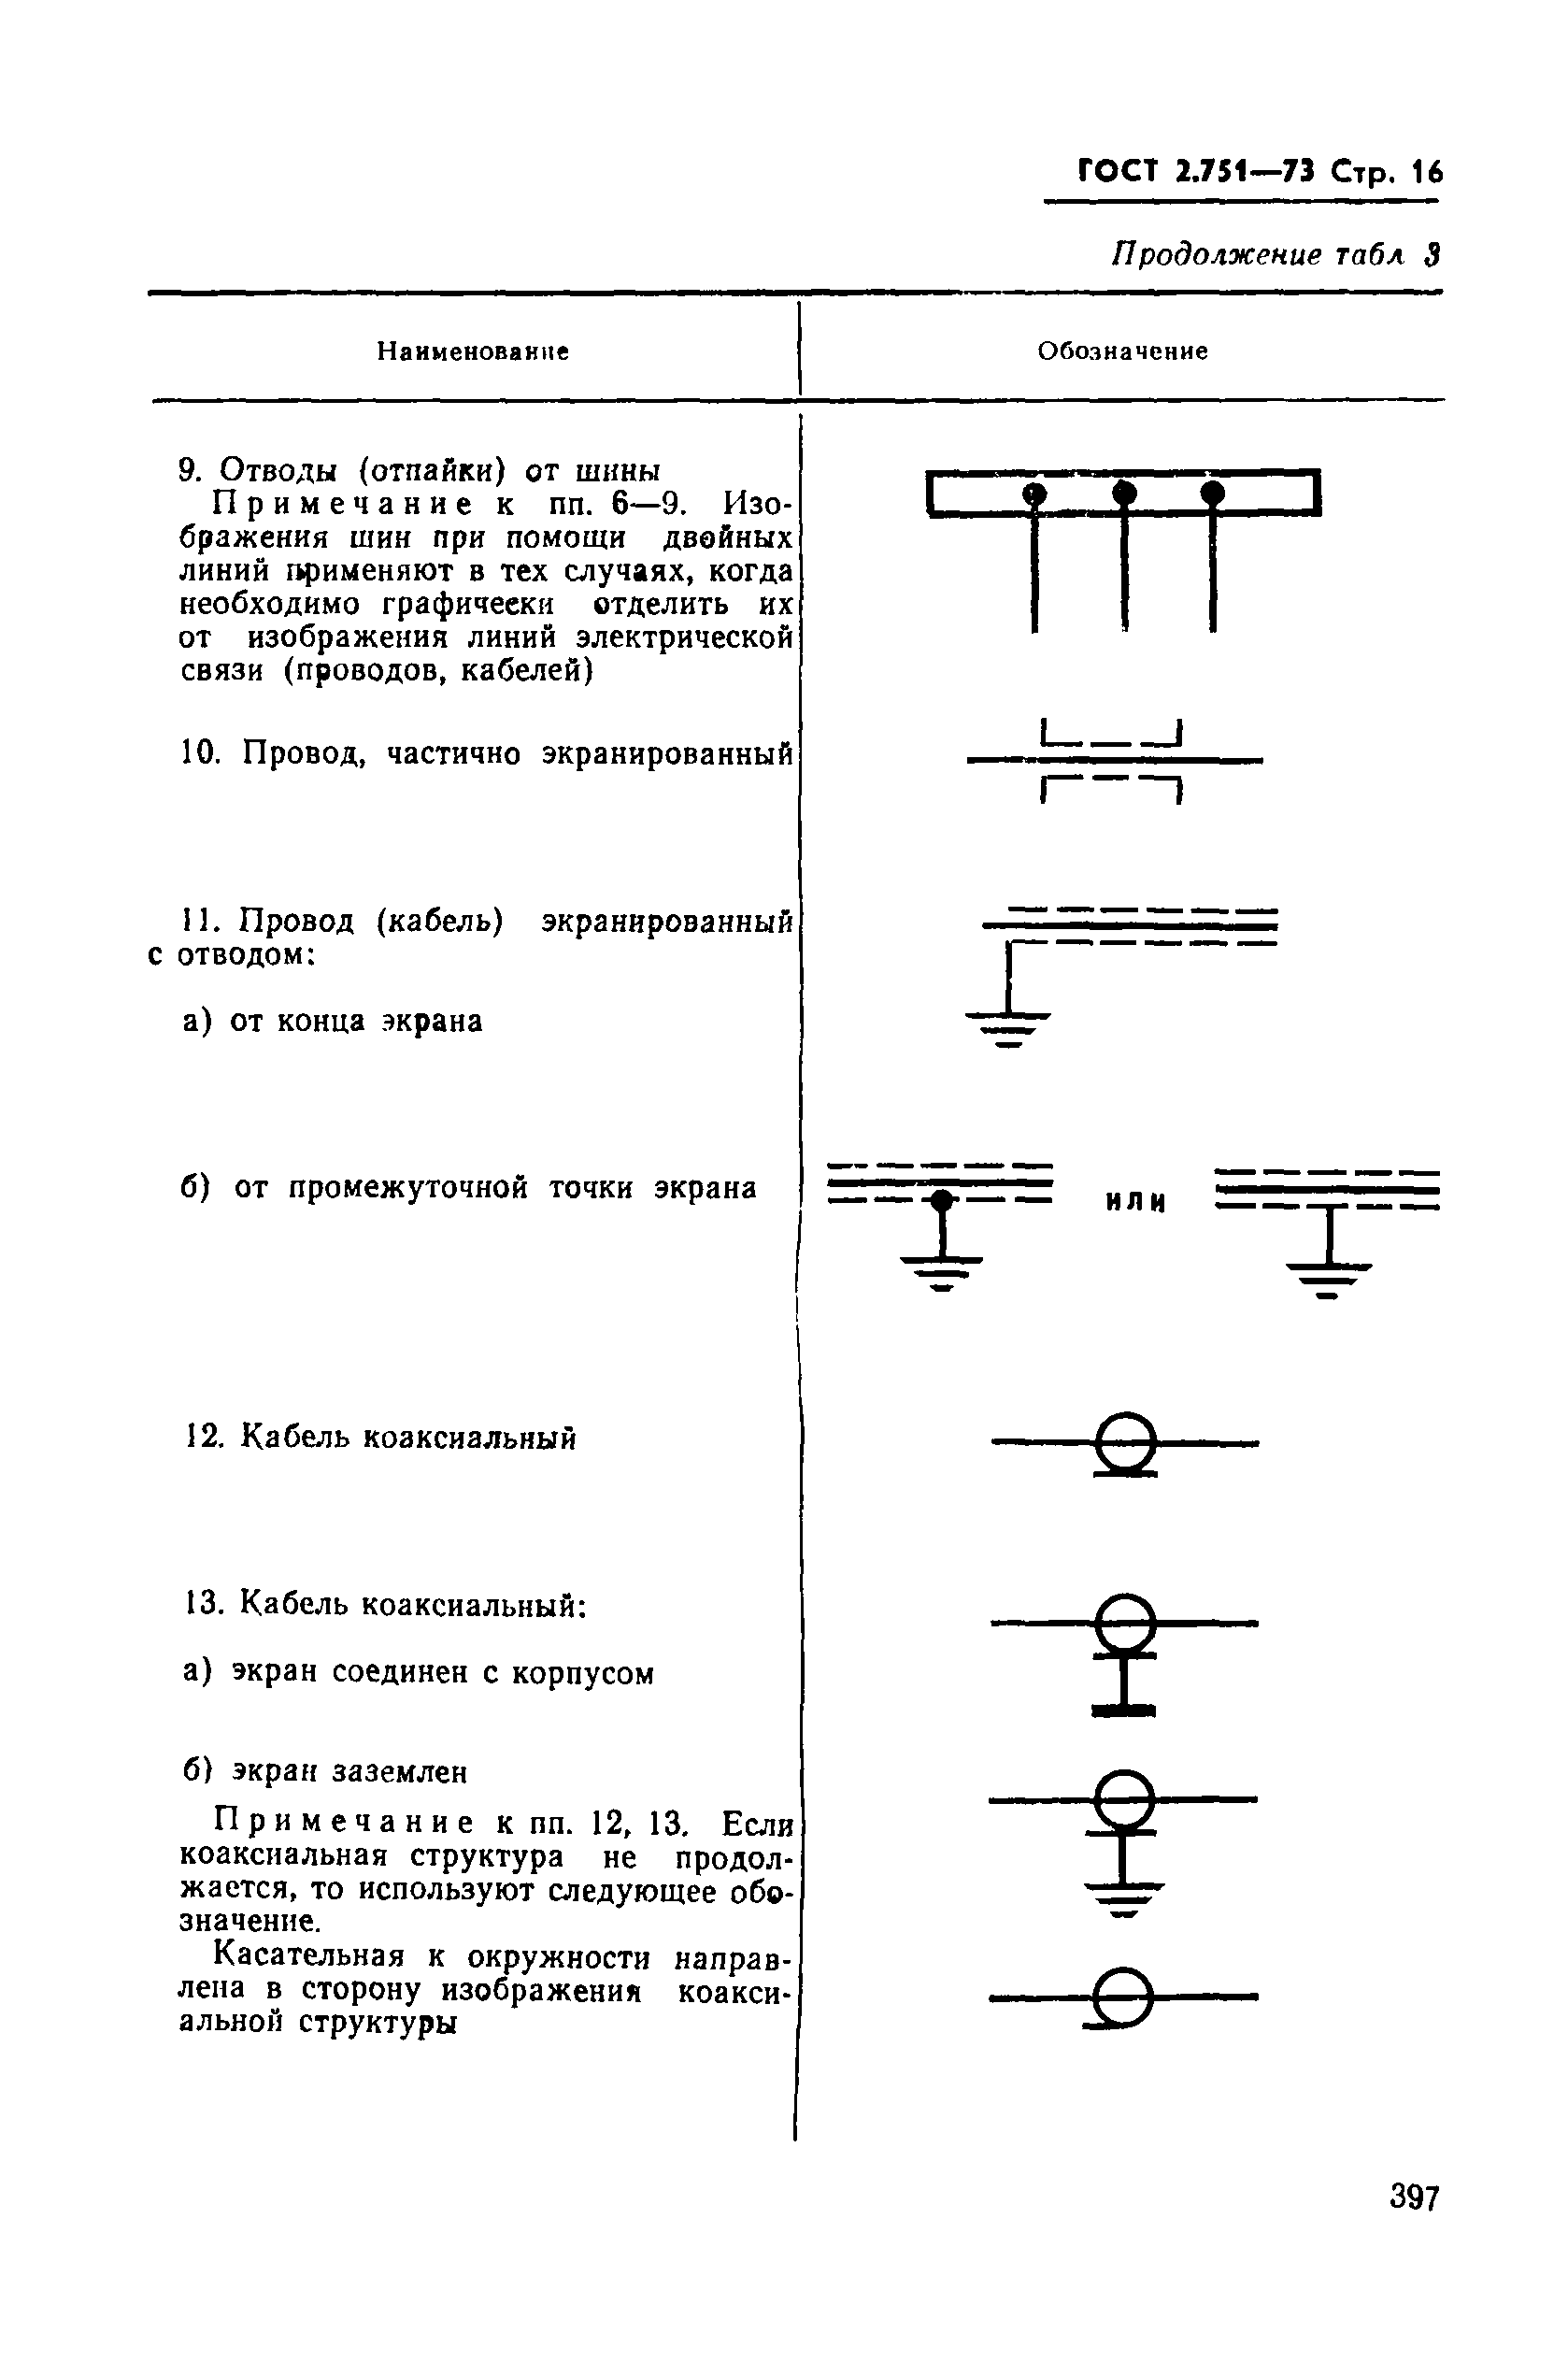 Обозначение кабеля провода на схеме